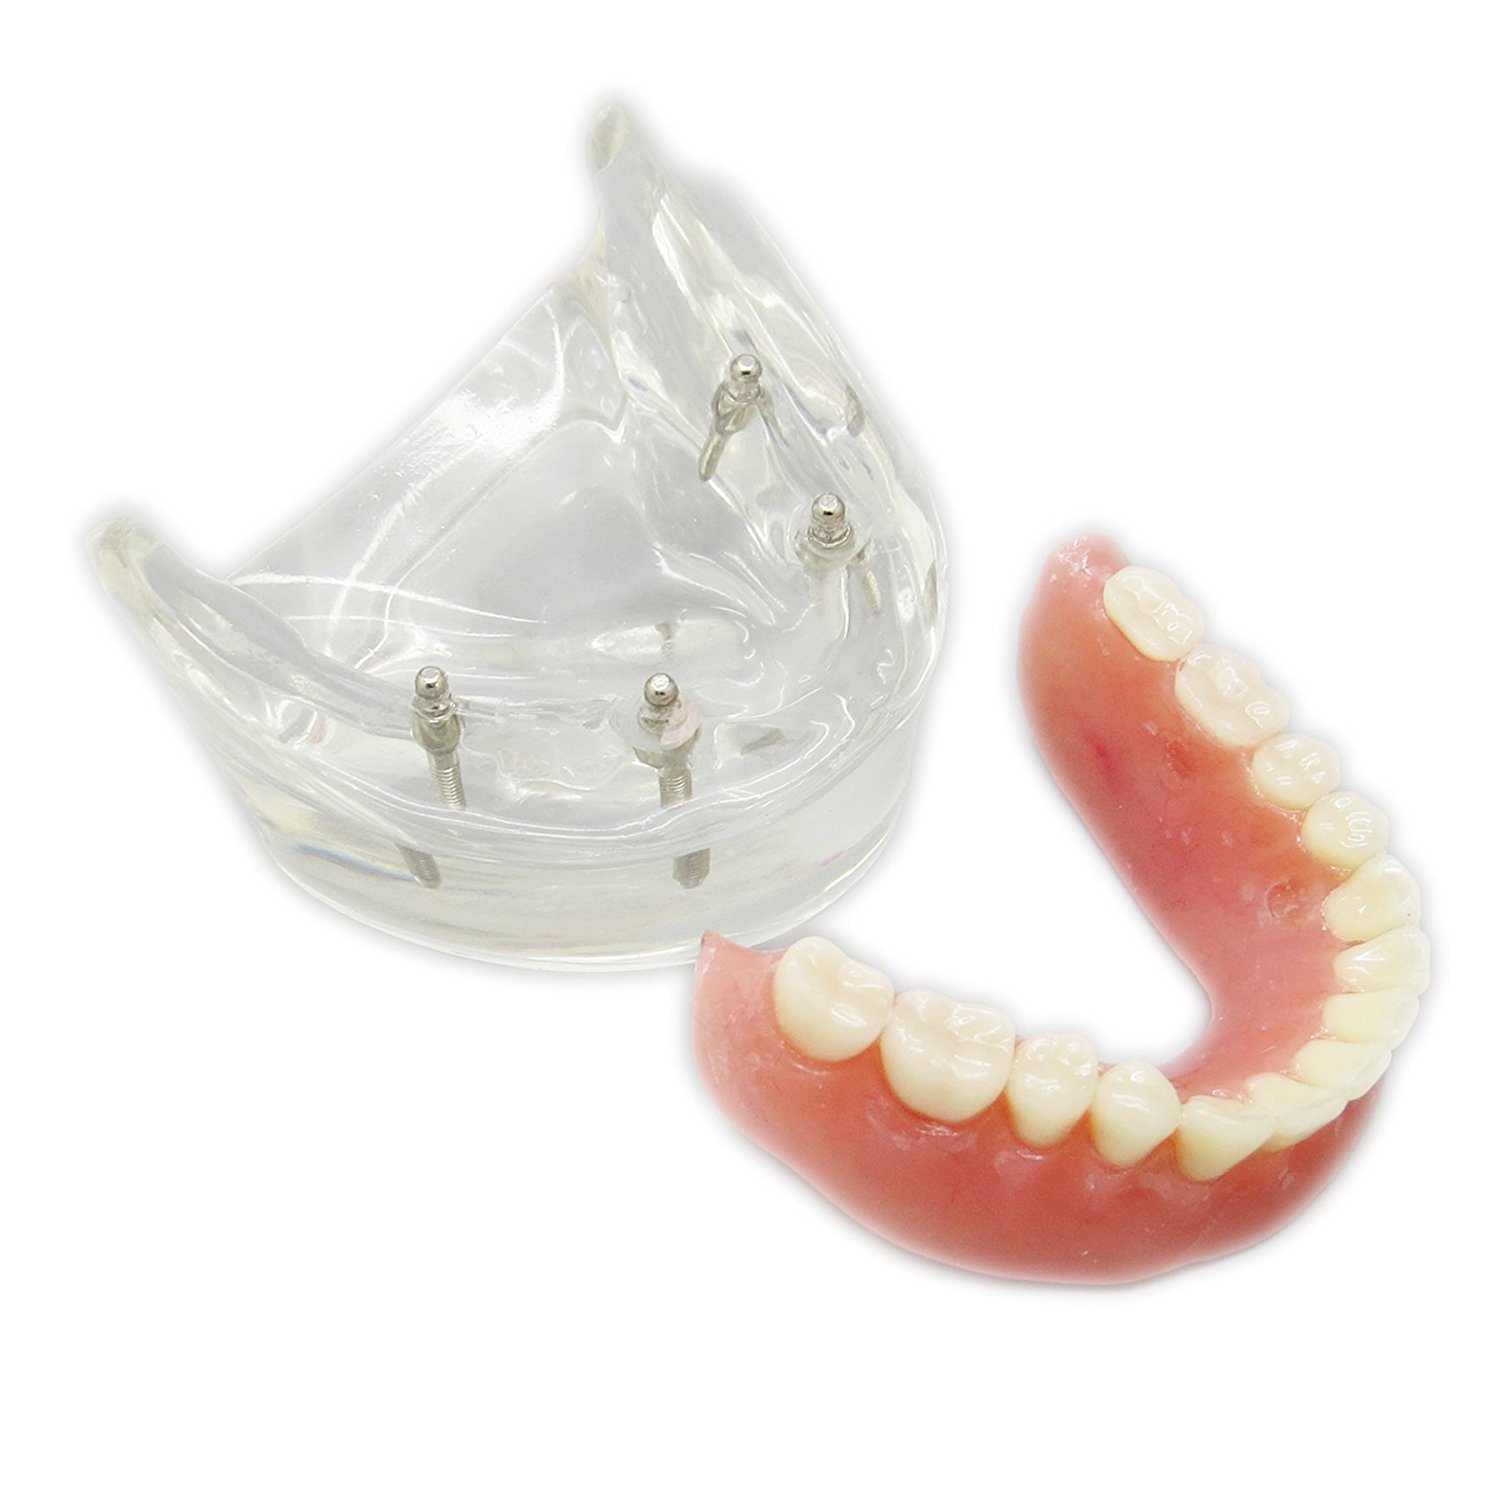 歯科下顎インプラント用義歯モデル模型 研究治療説明用歯科模型 4本インプラント脱着可能 クリアベース 透明通販-Dentalshop.JP